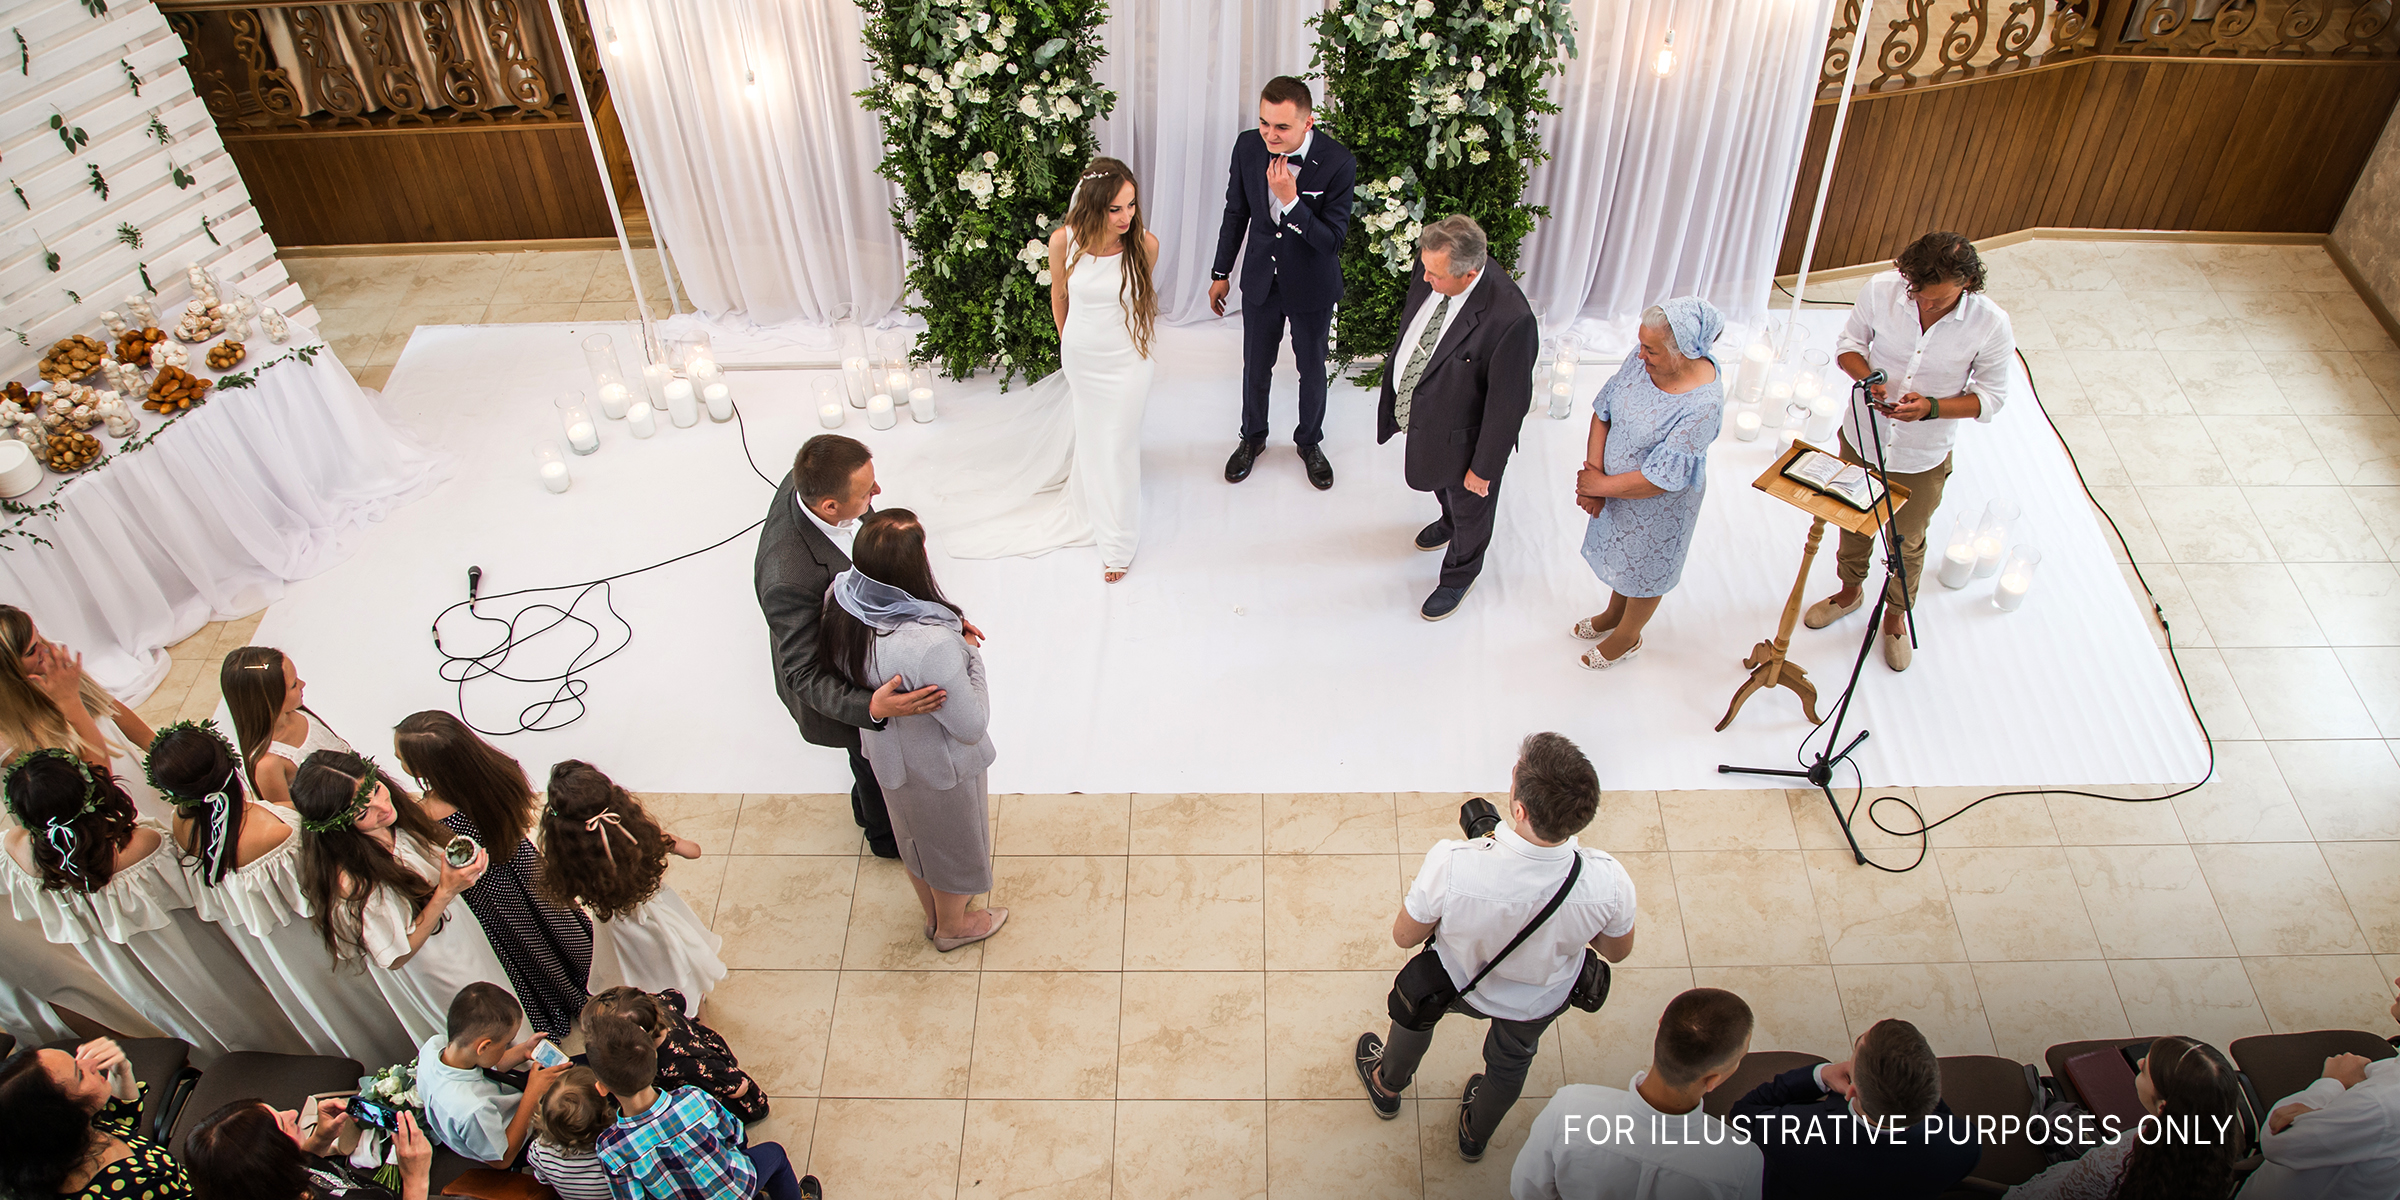 Une cérémonie de mariage | Source : Shutterstock